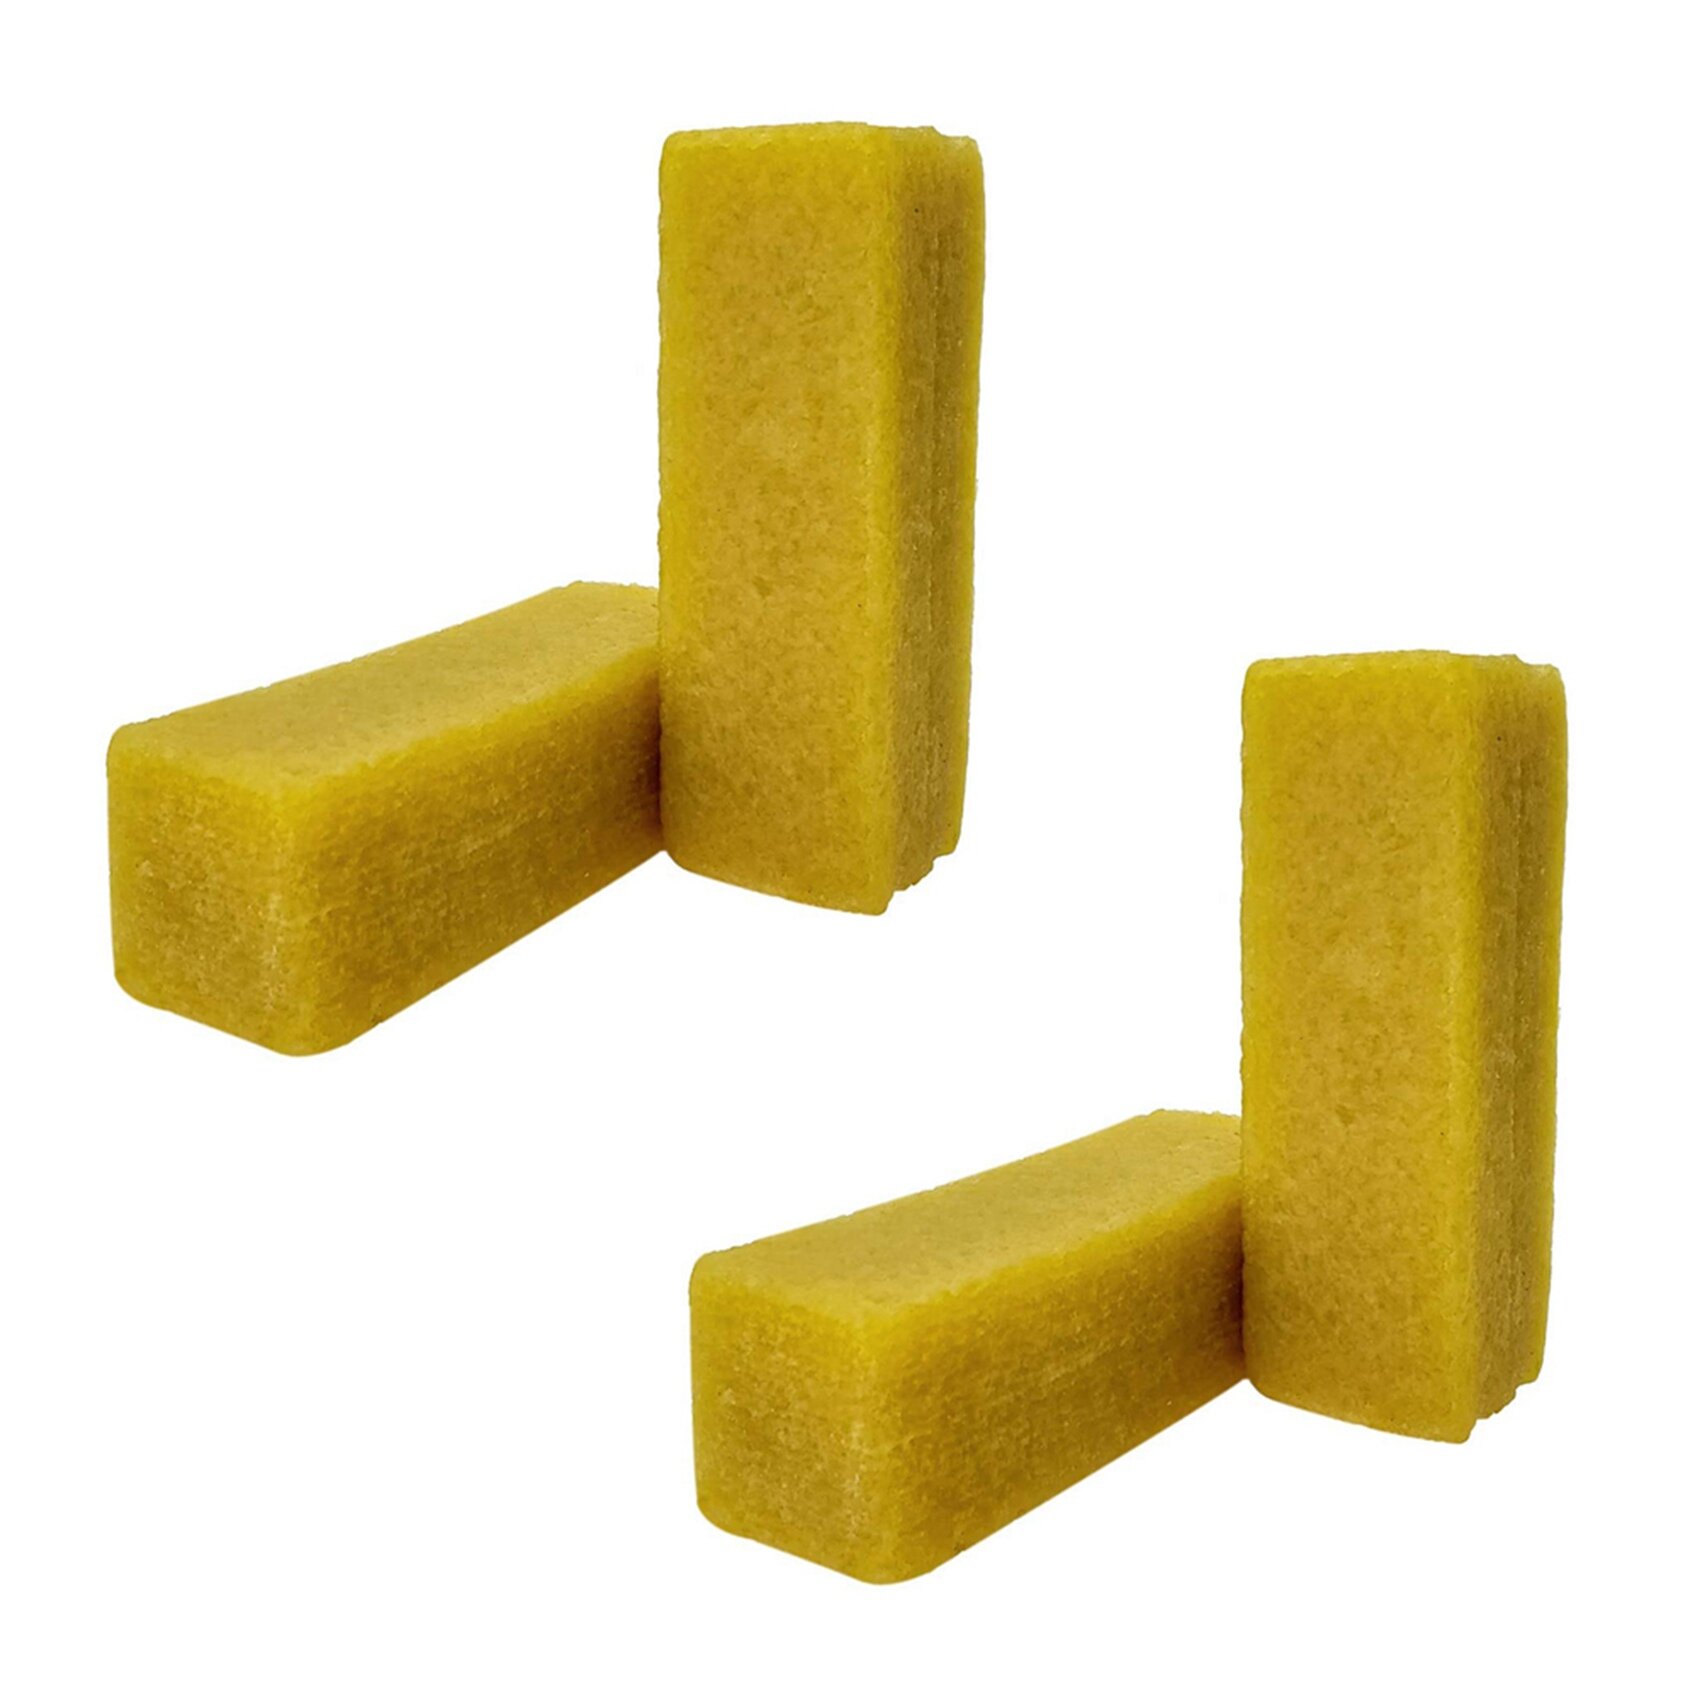 2X Abrasive Cleaning Stick Sanding Belt Band Drum Cleaner Sandpaper Cleaning Eraser for Belt Disc Sander Tool